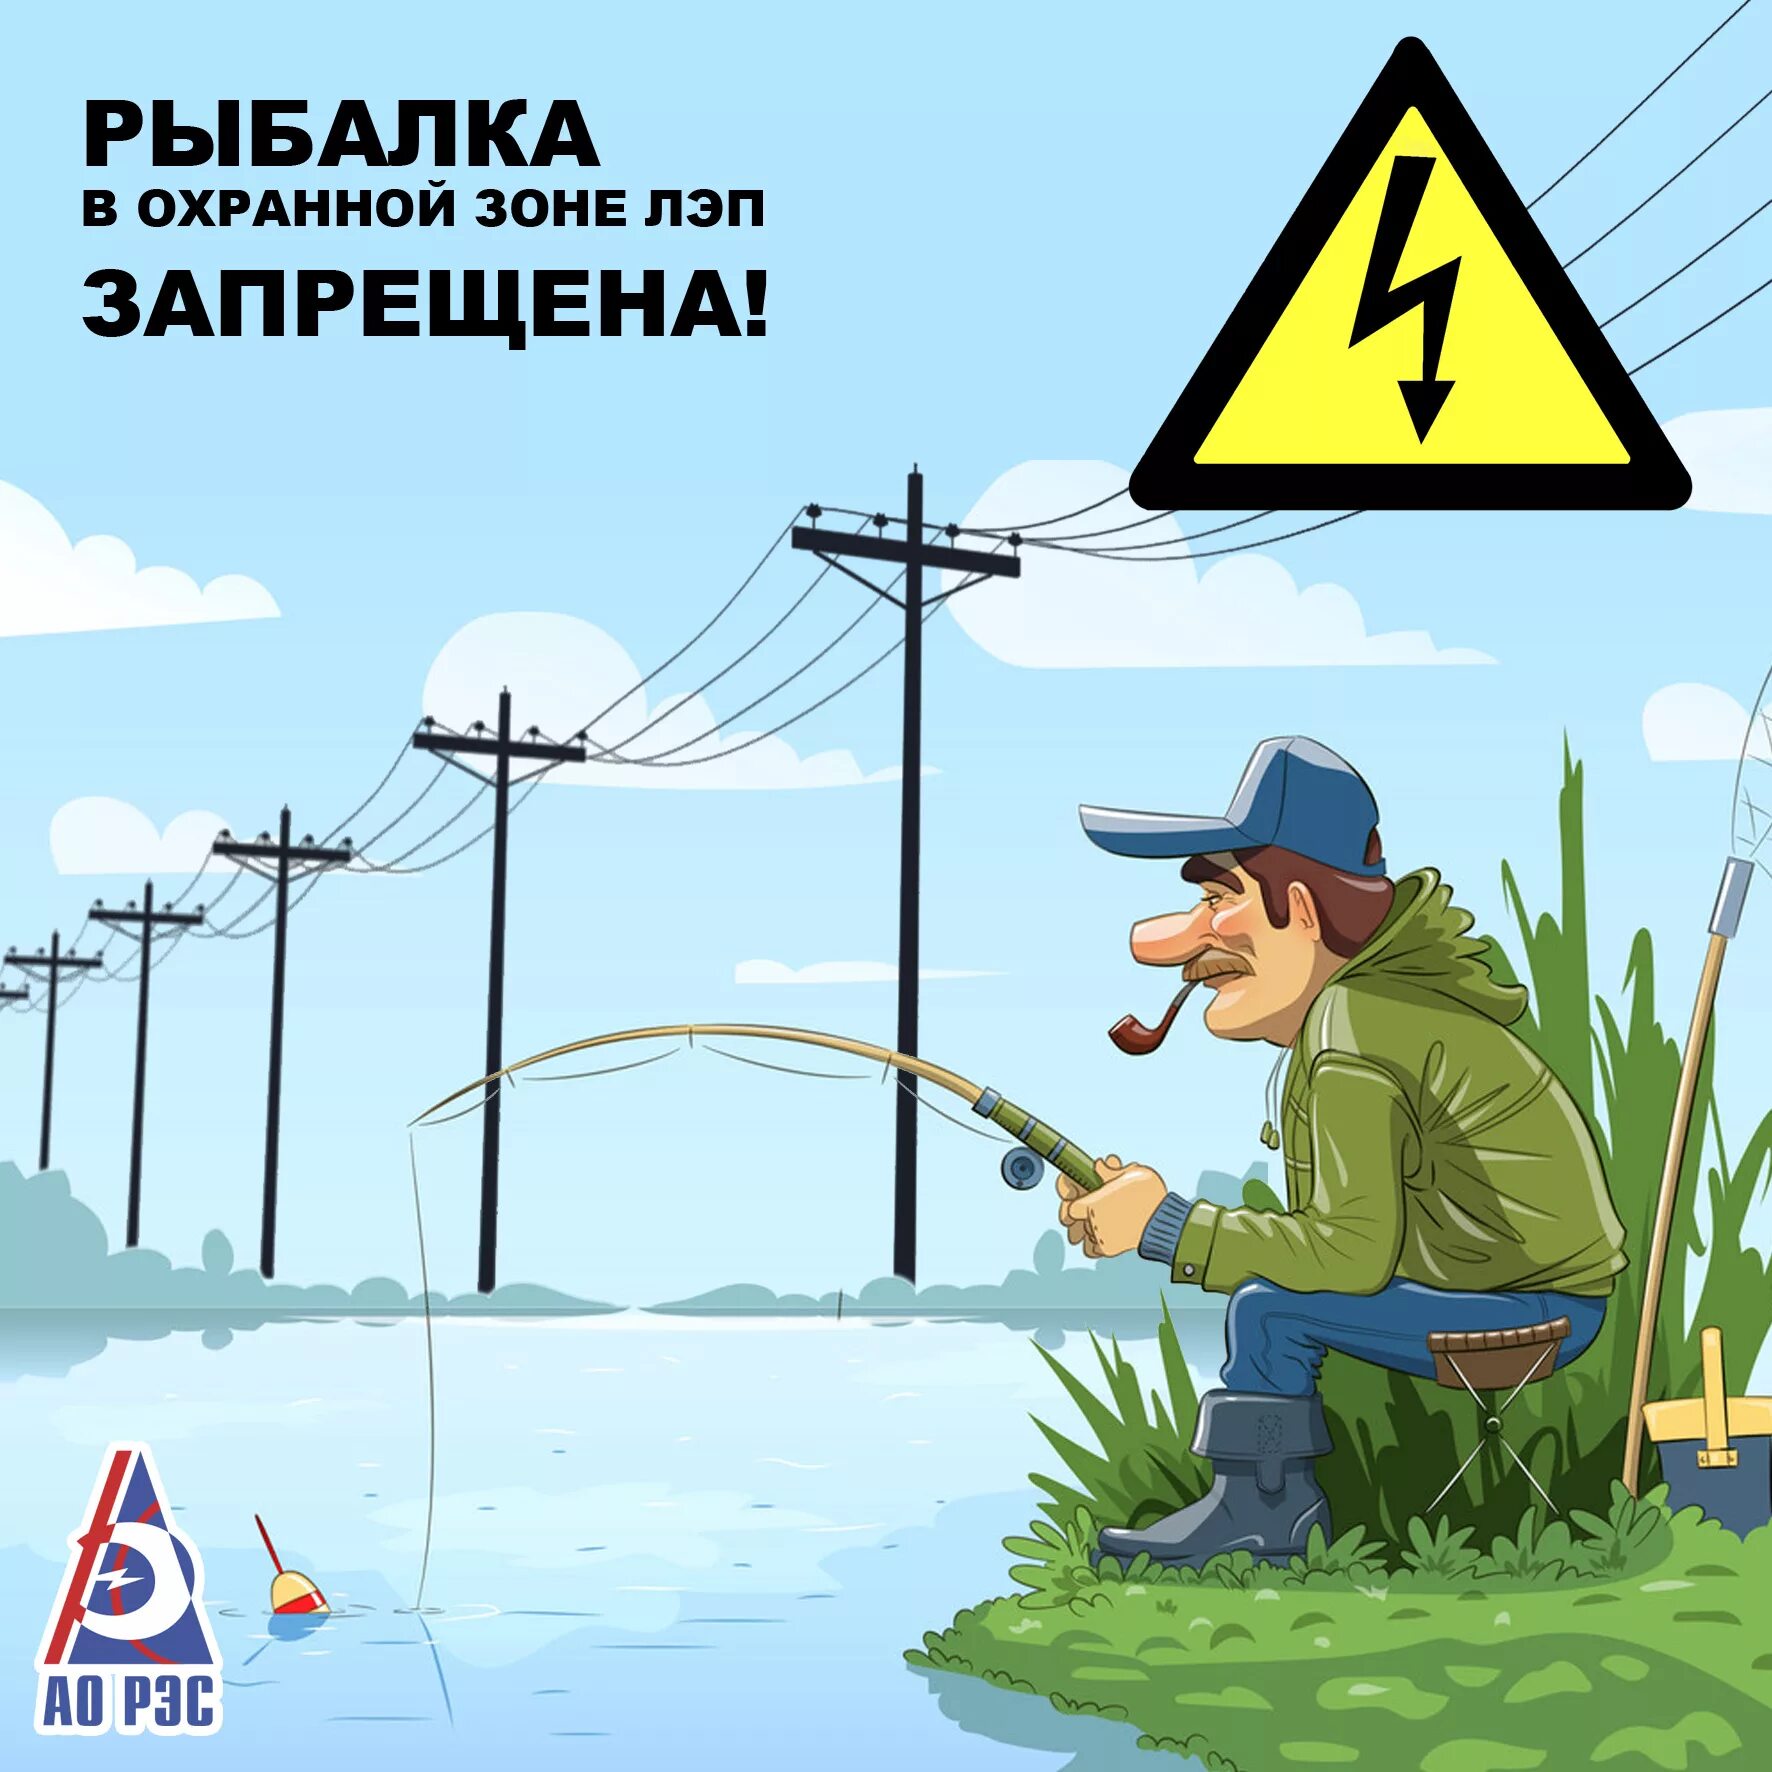 О запрете рыбалки. Рыбалка вблизи ЛЭП. Опасно рыбачить под линиями электропередачи. Рыбалка в охранной зоне ЛЭП. Нельзя ловить рыбу вблизи линий электропередачи.